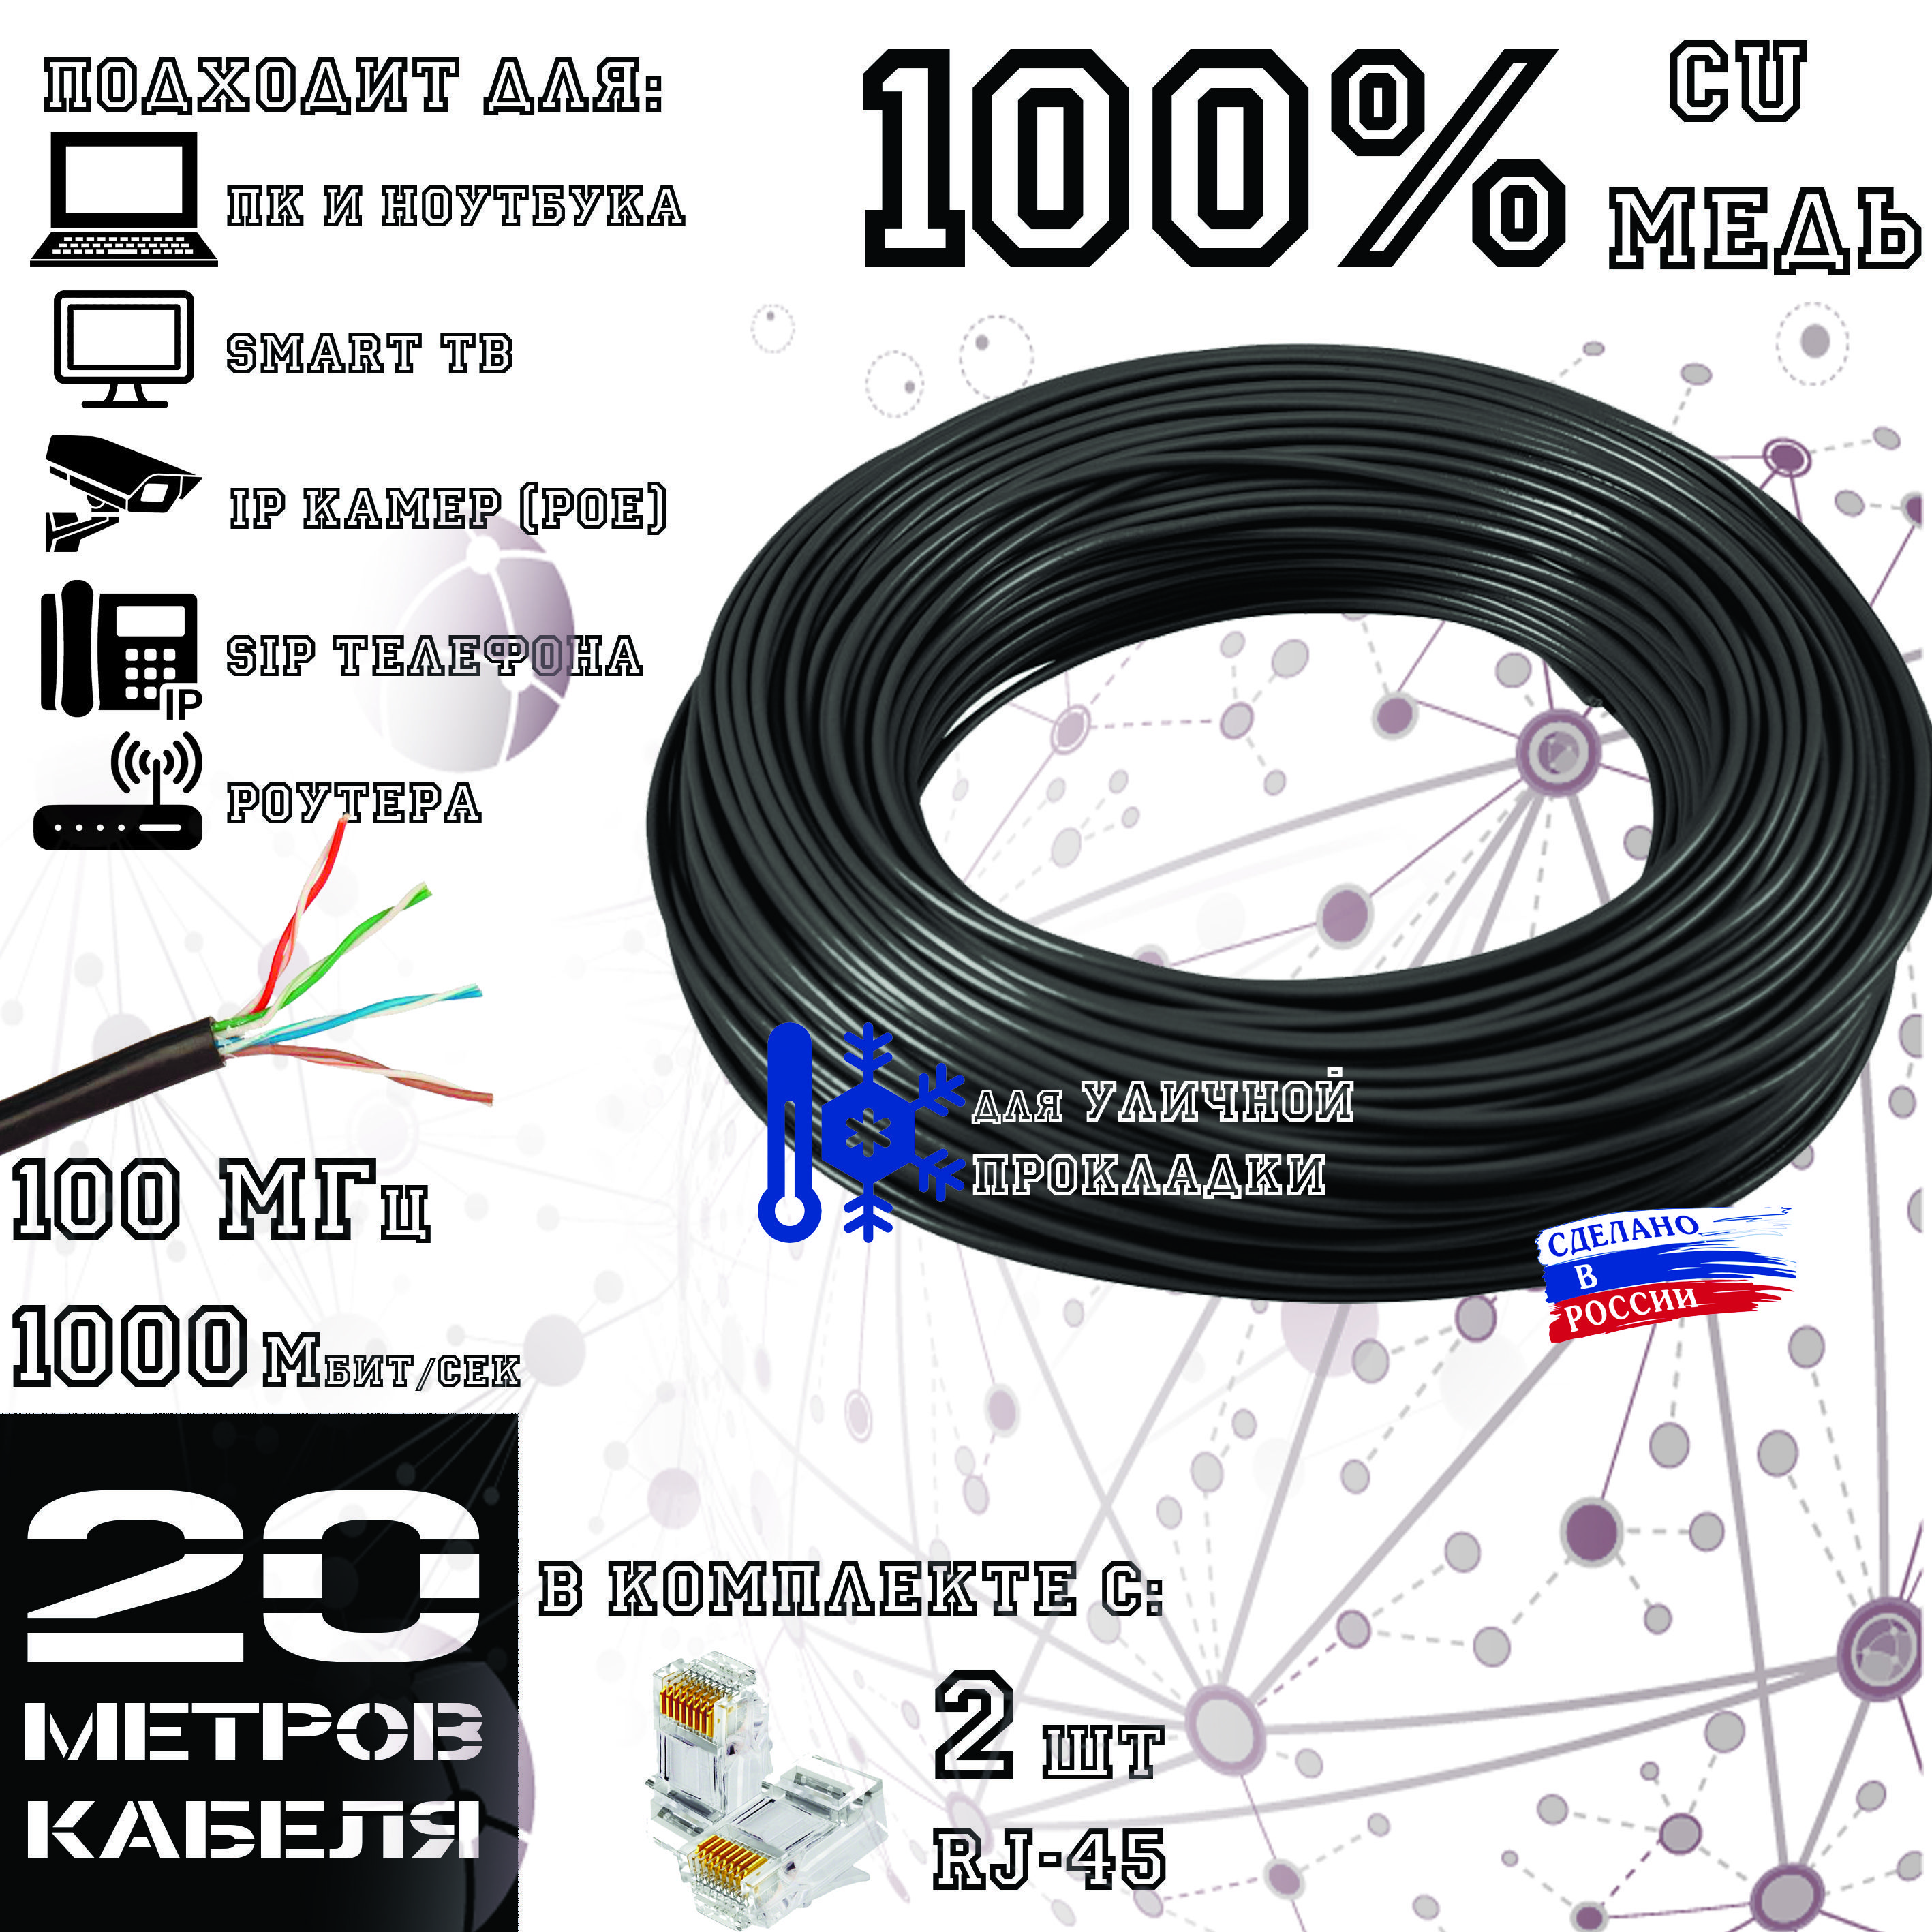 Высококачественный интернет кабель (витая пара) ПОЛИМЕТ, CU, UTP4 пары, Cat.5е, outdoor